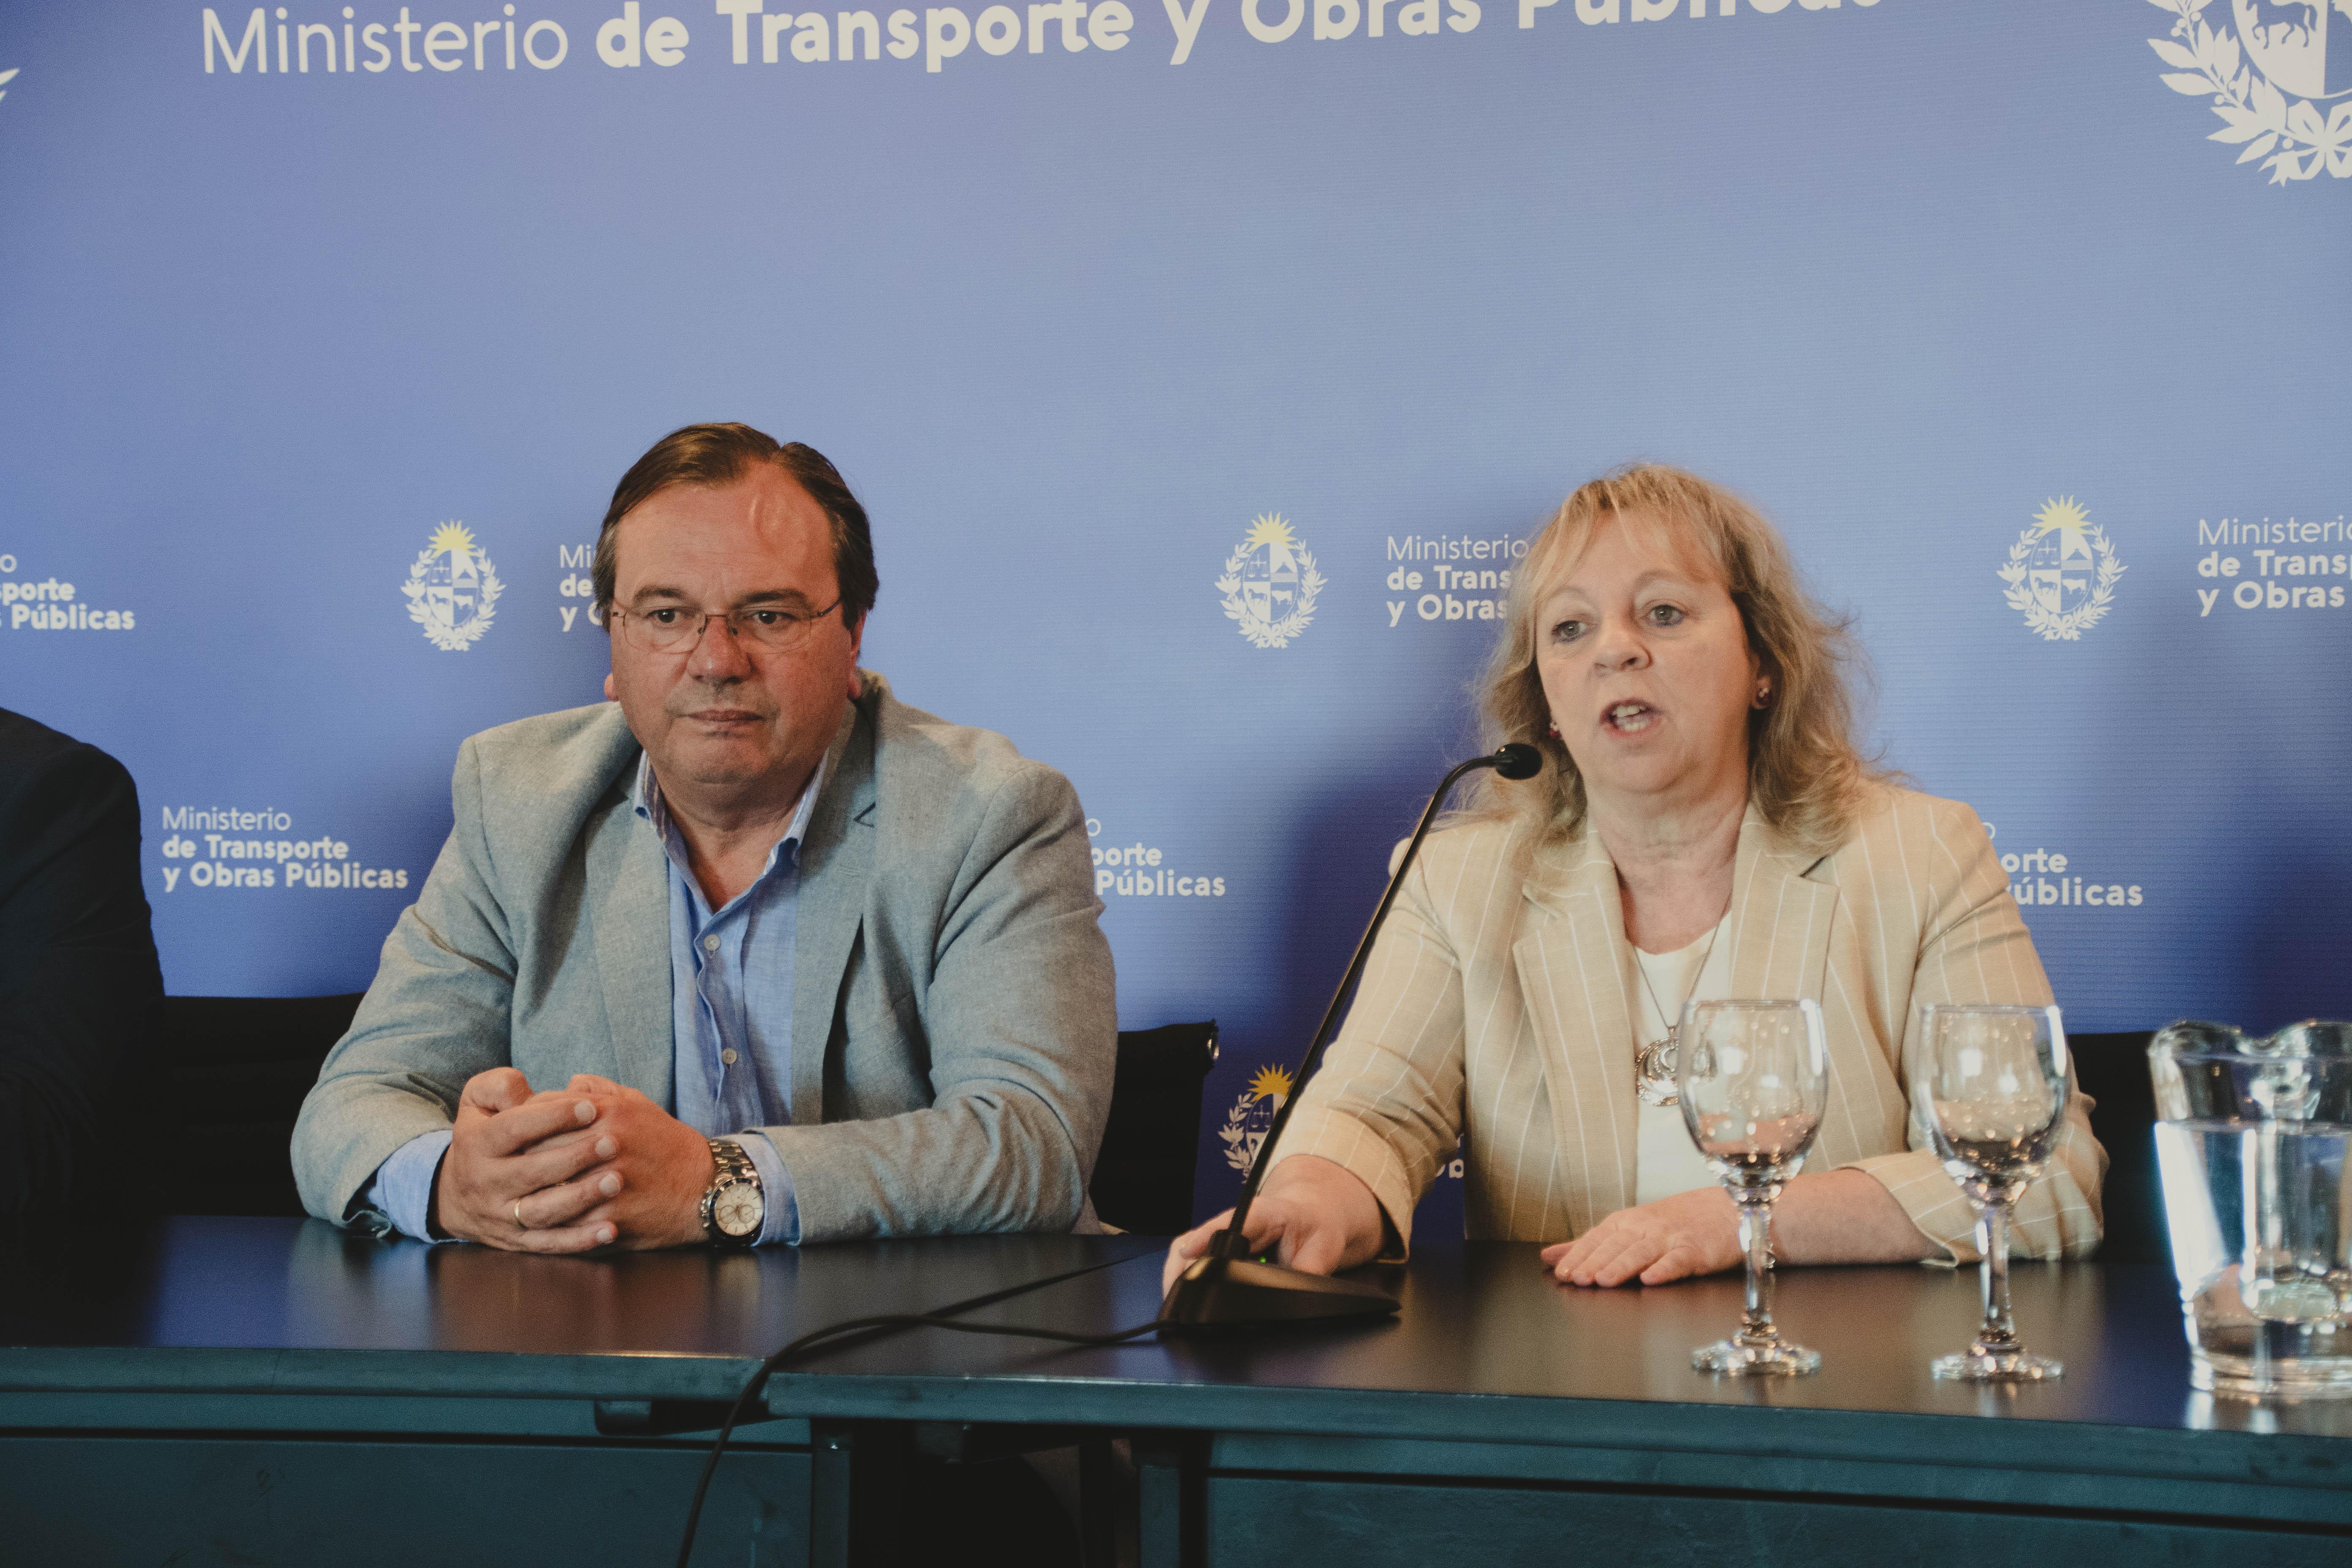 Ministro de Transporte y Obras Públicas José Luis Falero y presidenta de UTE Silvia Emaldi